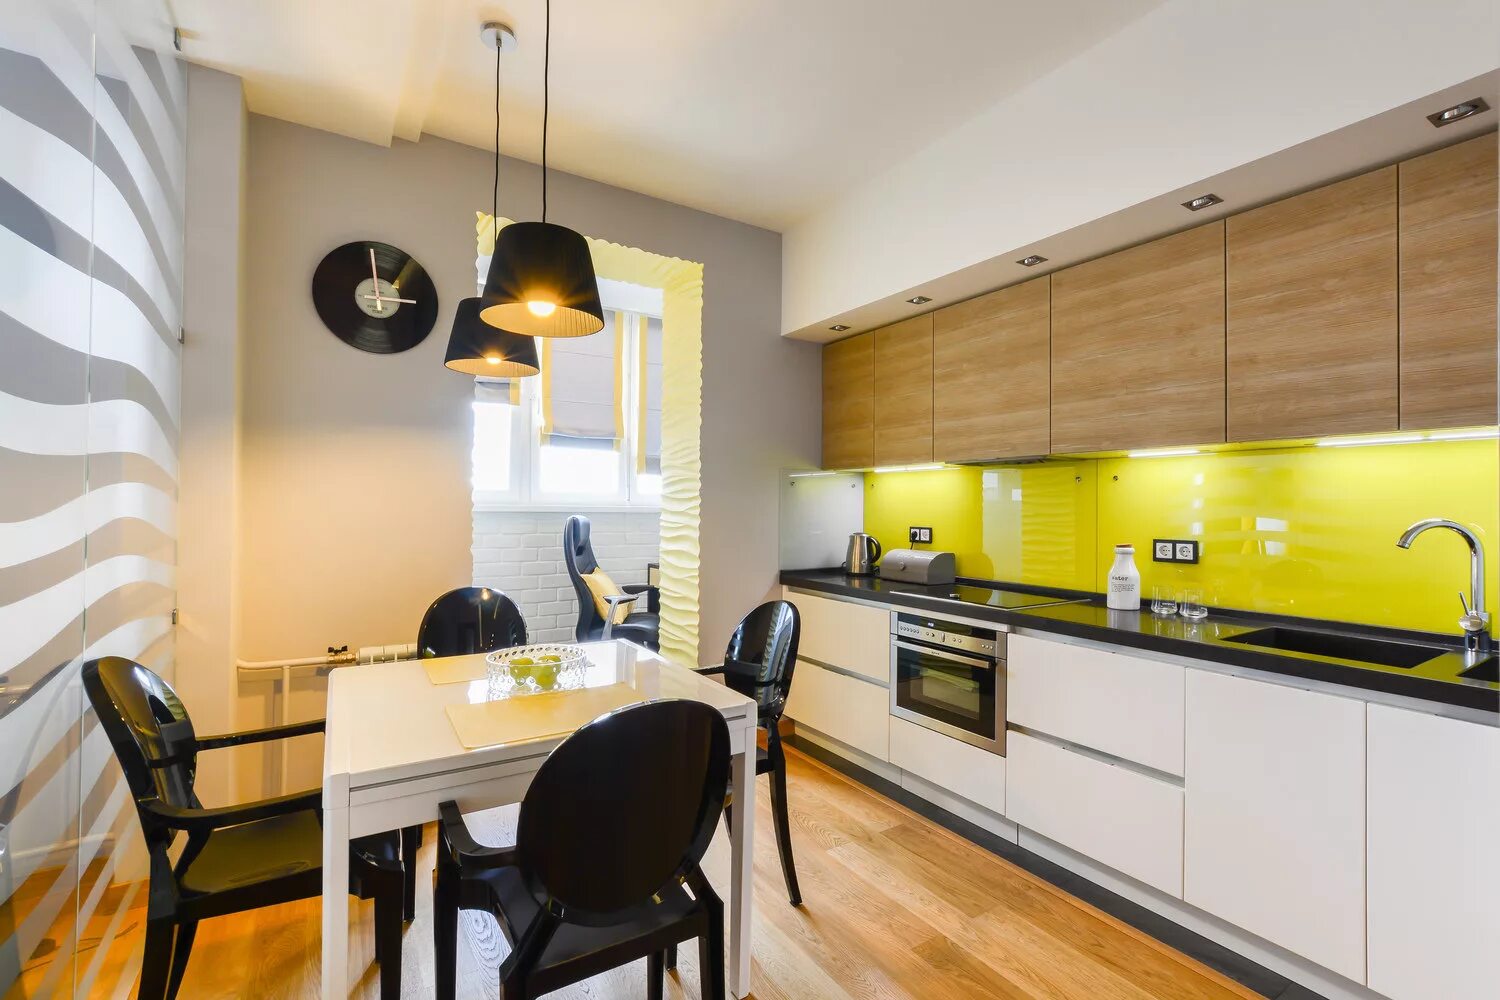 Желтая кухня дизайн. Интерьер кухни. Кухня в желтом цвете. Современный интерьер кухни. Желтая кухня в интерьере.